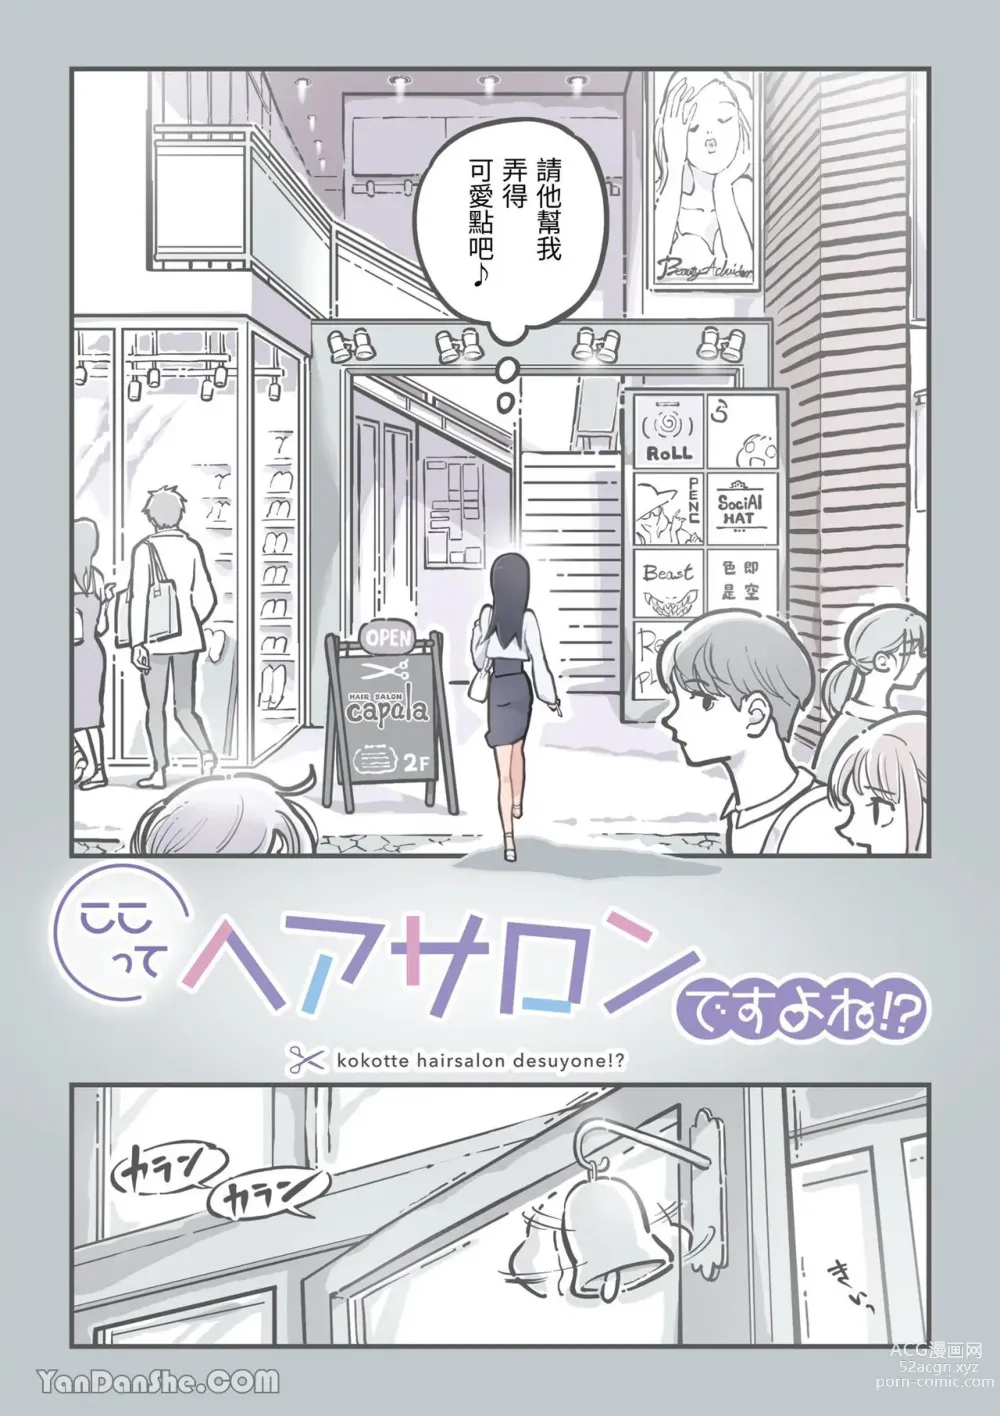 Page 3 of doujinshi Kokotte Hair Salon desu yo ne!?